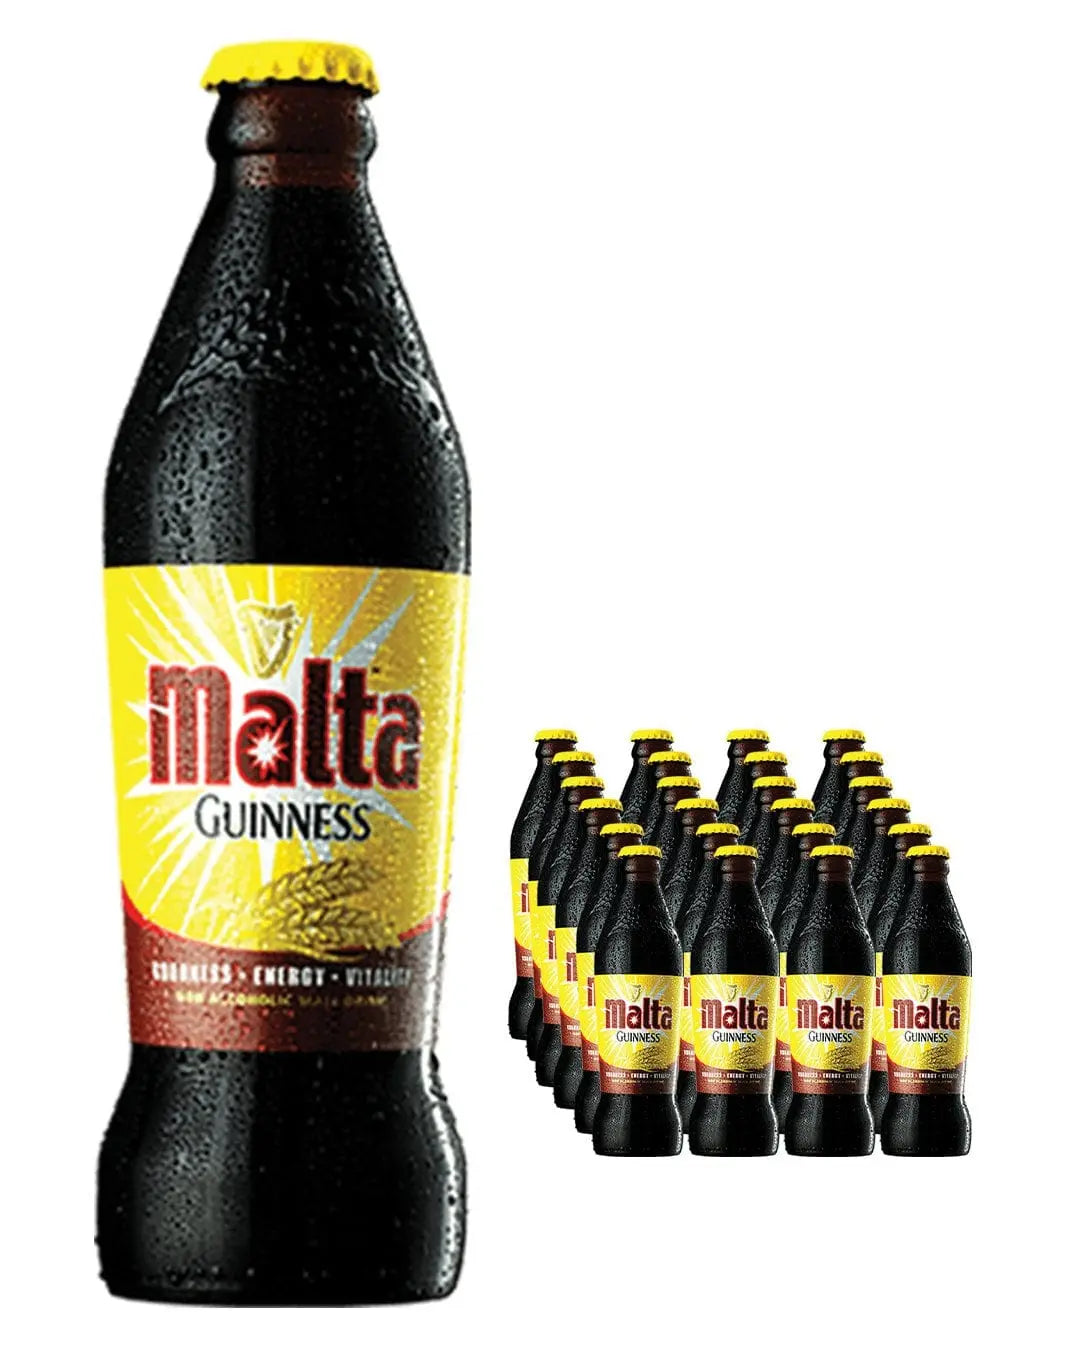 Malta Guinness Non Alcoholic Stout Beer Bottle Multipack, 24 x 330 ml Beer